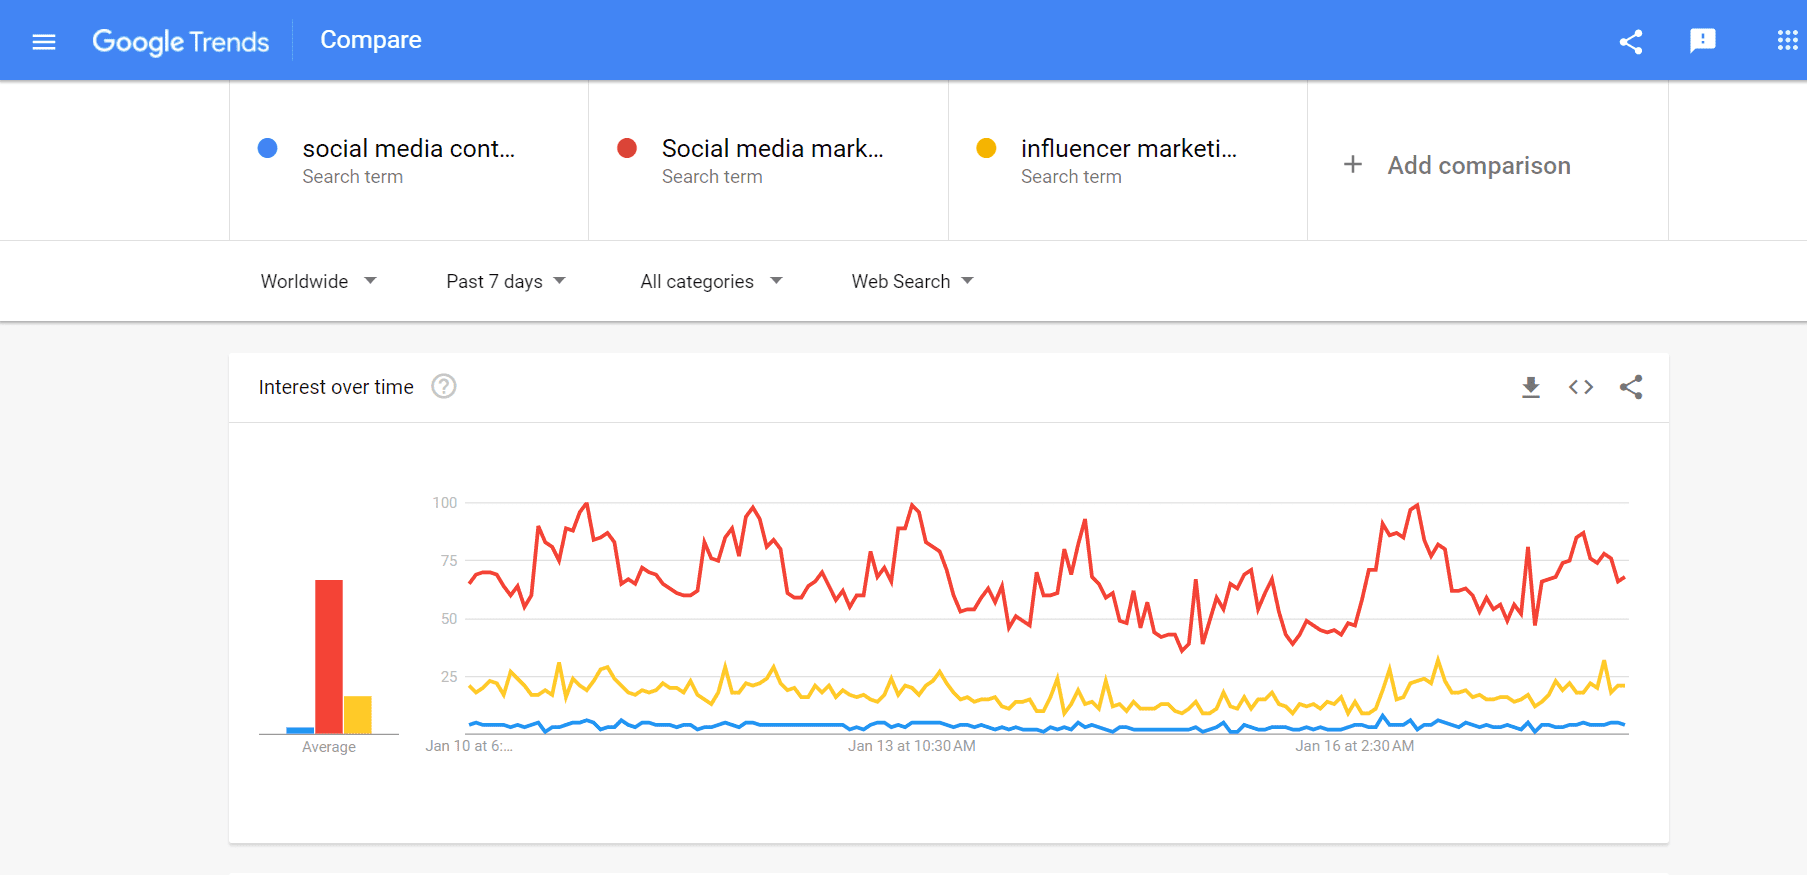 Vergleich der Google-Suchtrends für drei verschiedene Suchbegriffe